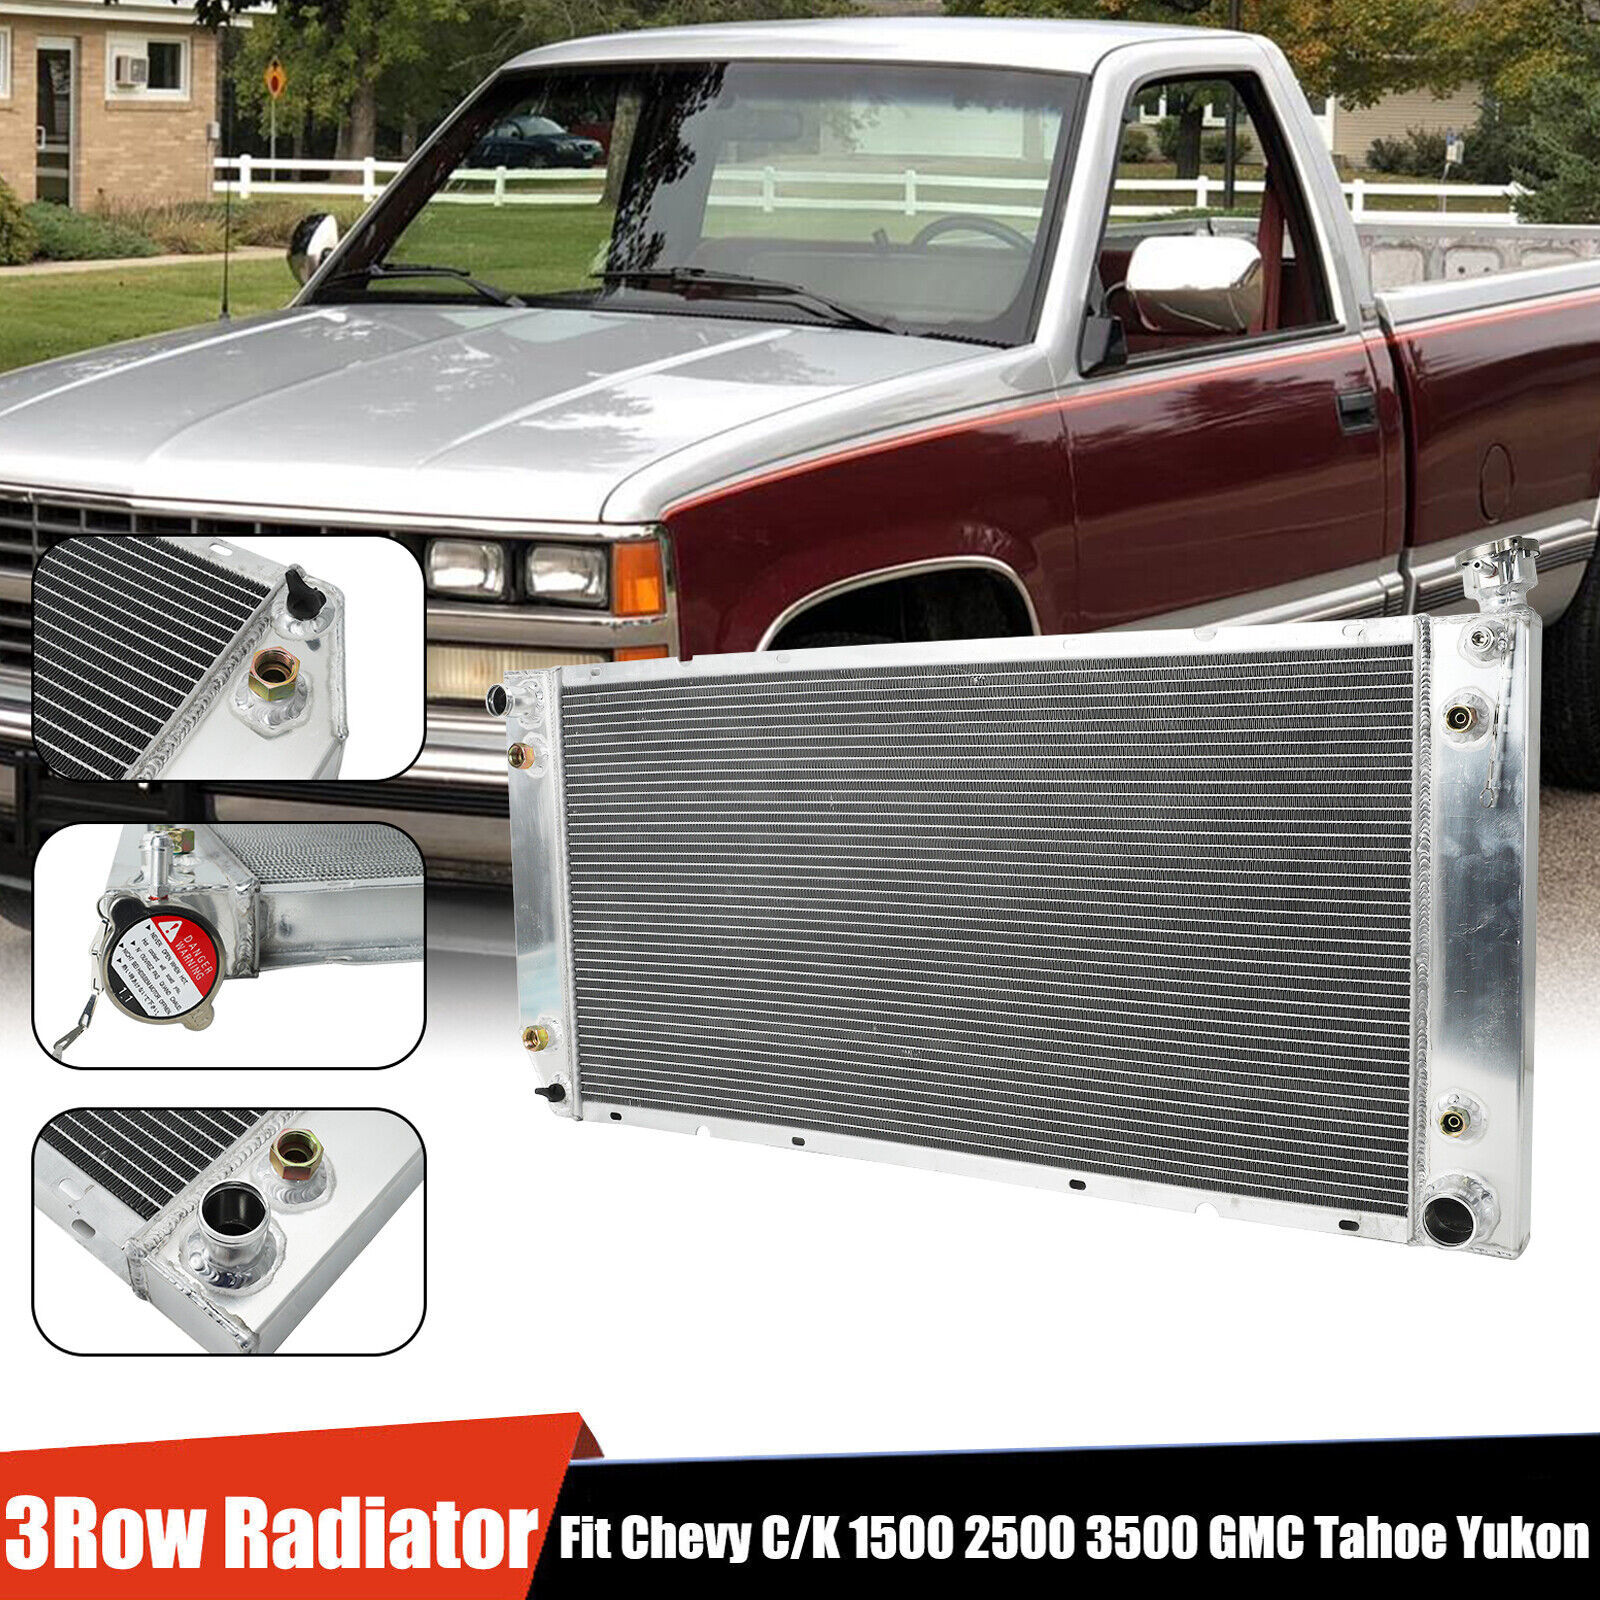 1520 3Row Aluminum Radiator For 1988-2000 Chevy C/K Truck 1500 2500 3500 5.7L V8